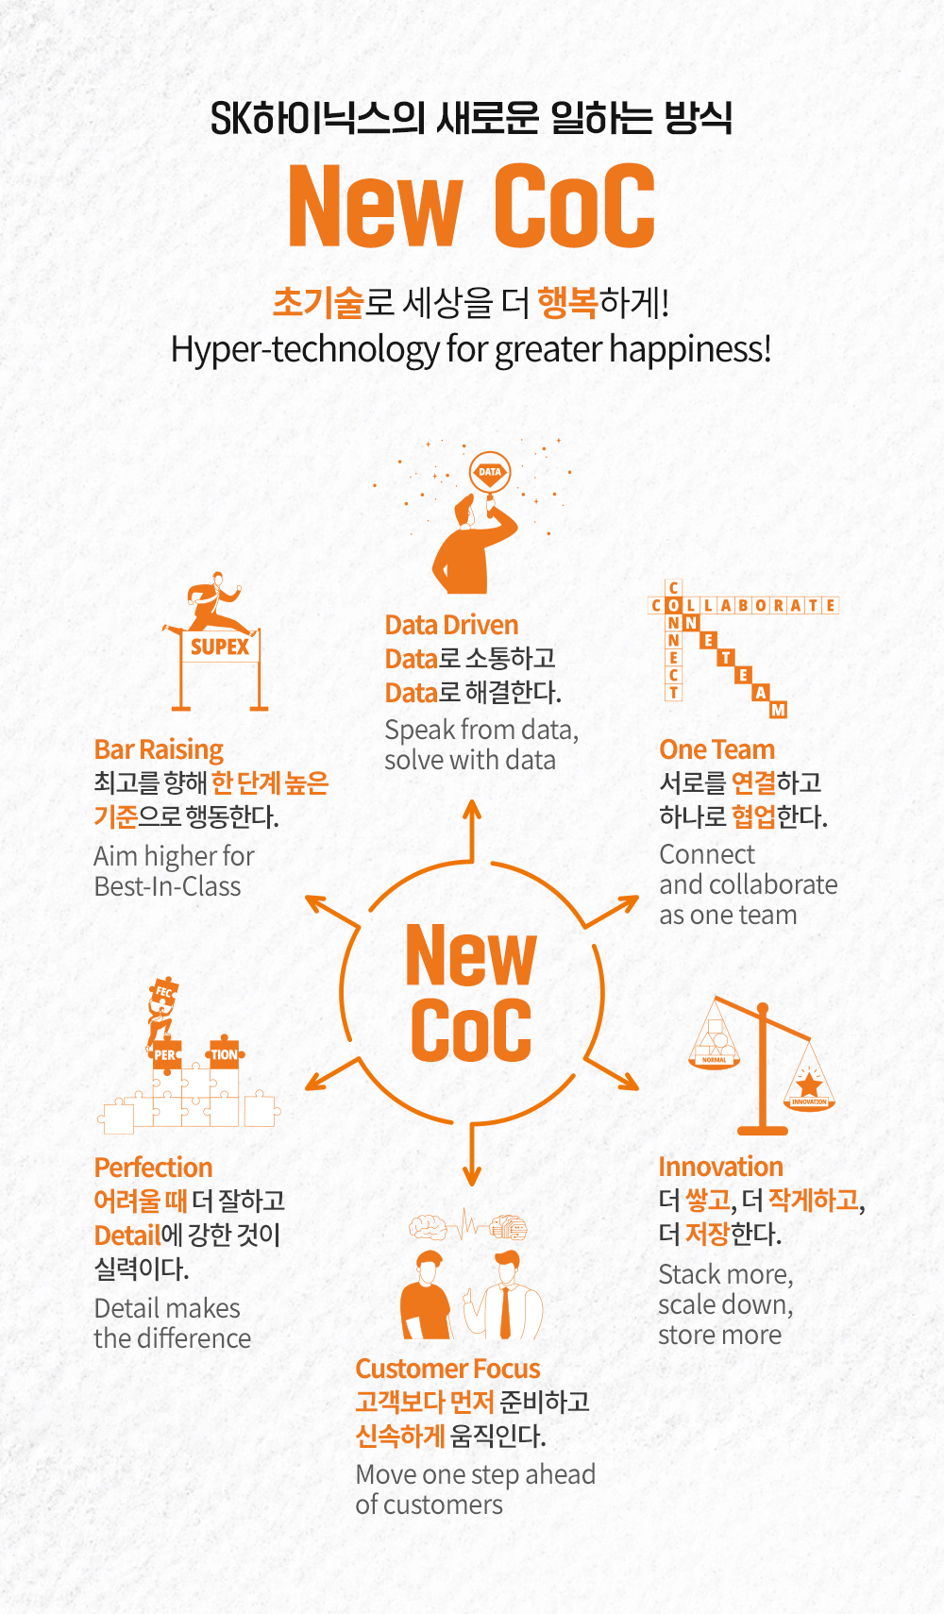 New CoC, 숏폼, mz세대, 소통, 기업문화